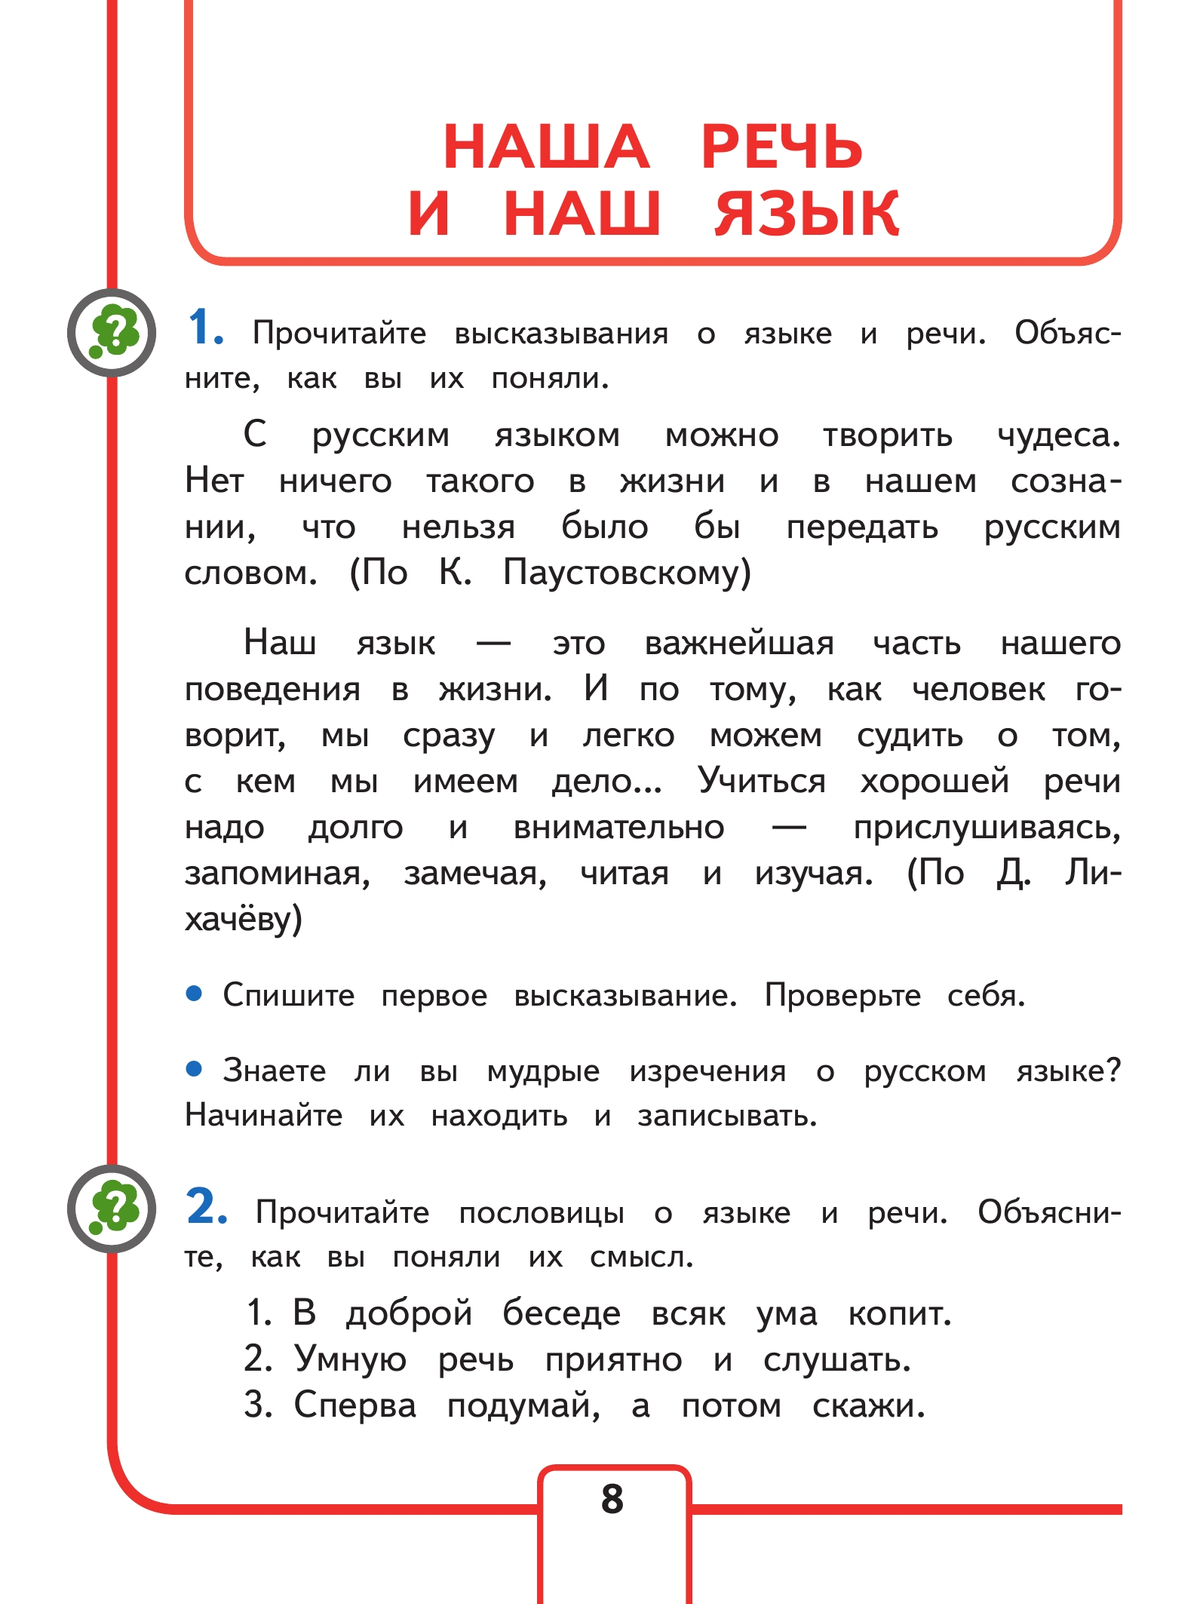 Русский язык. 4 класс. Учебное пособие. В 5 ч. Часть 1 (для слабовидящих обучающихся) 11